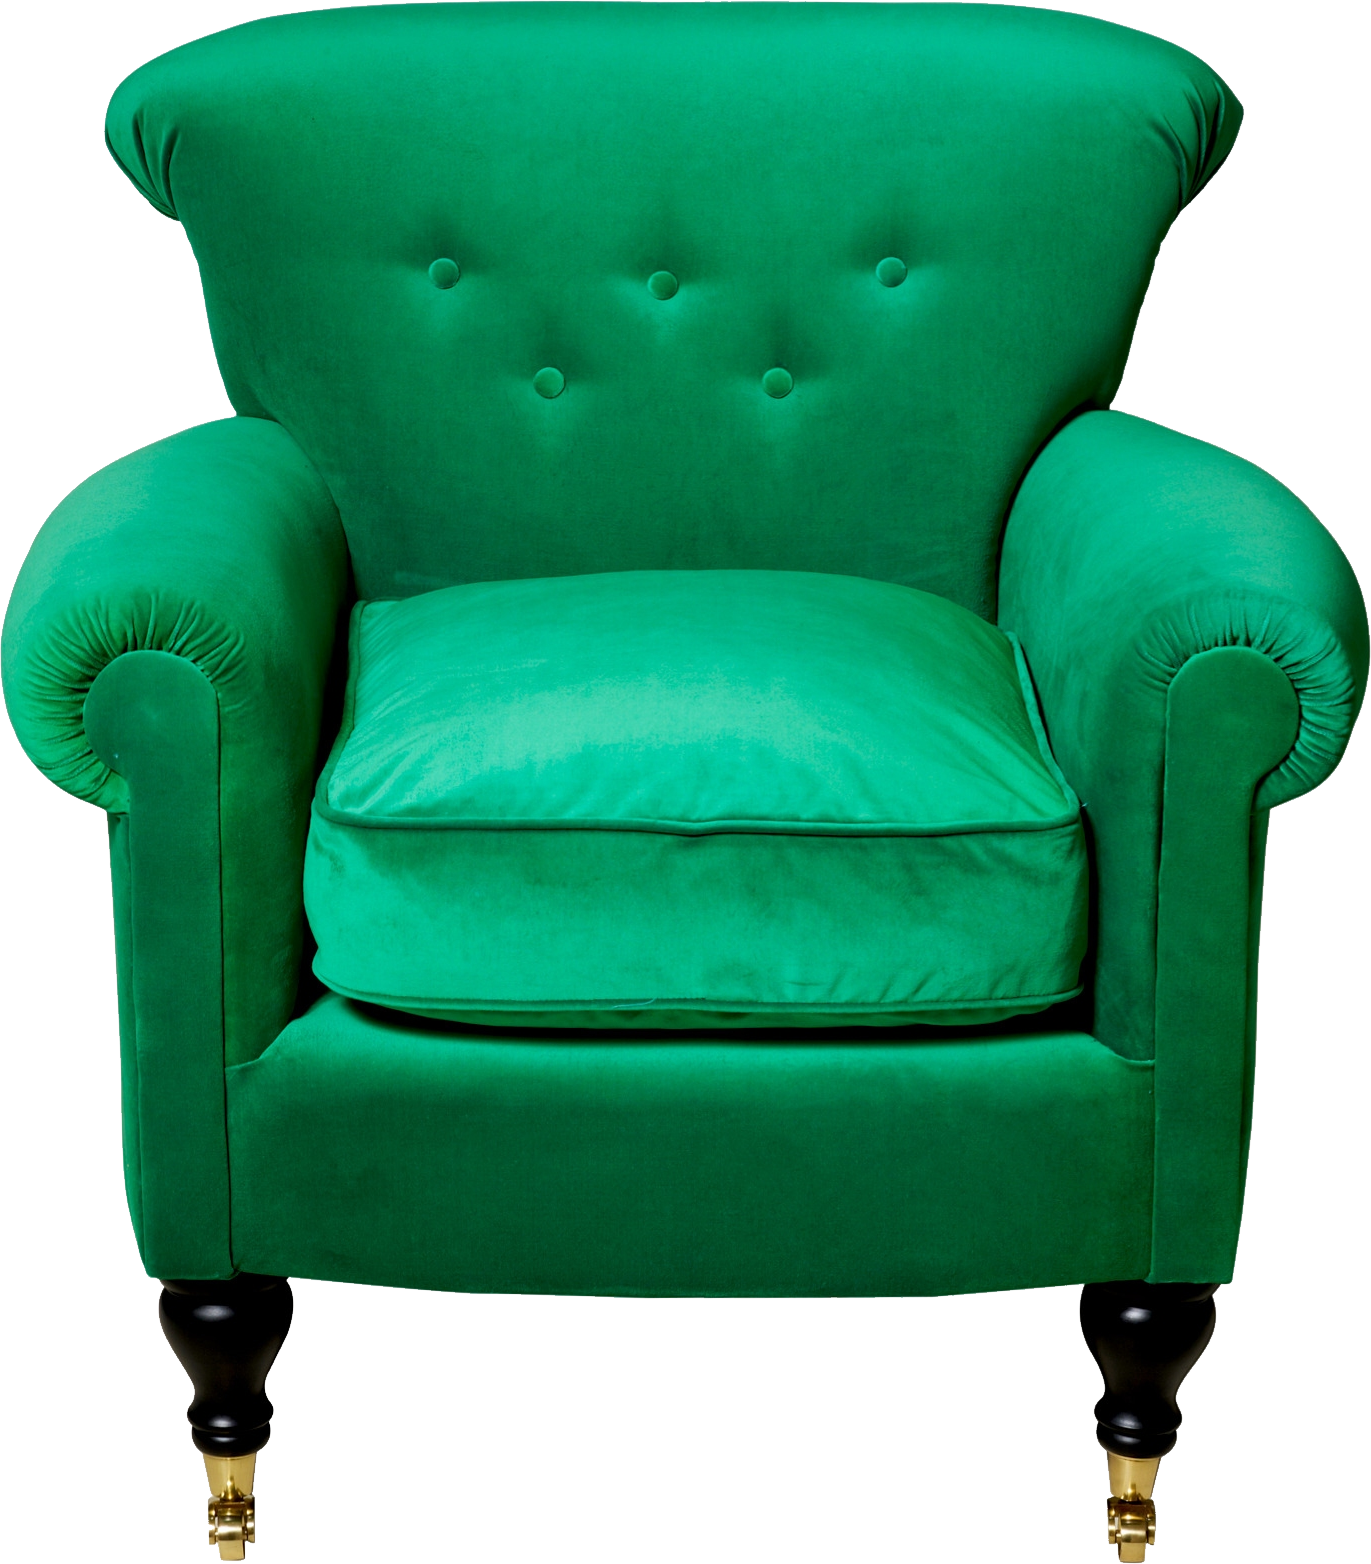 Ghế bành màu xanh lá cây